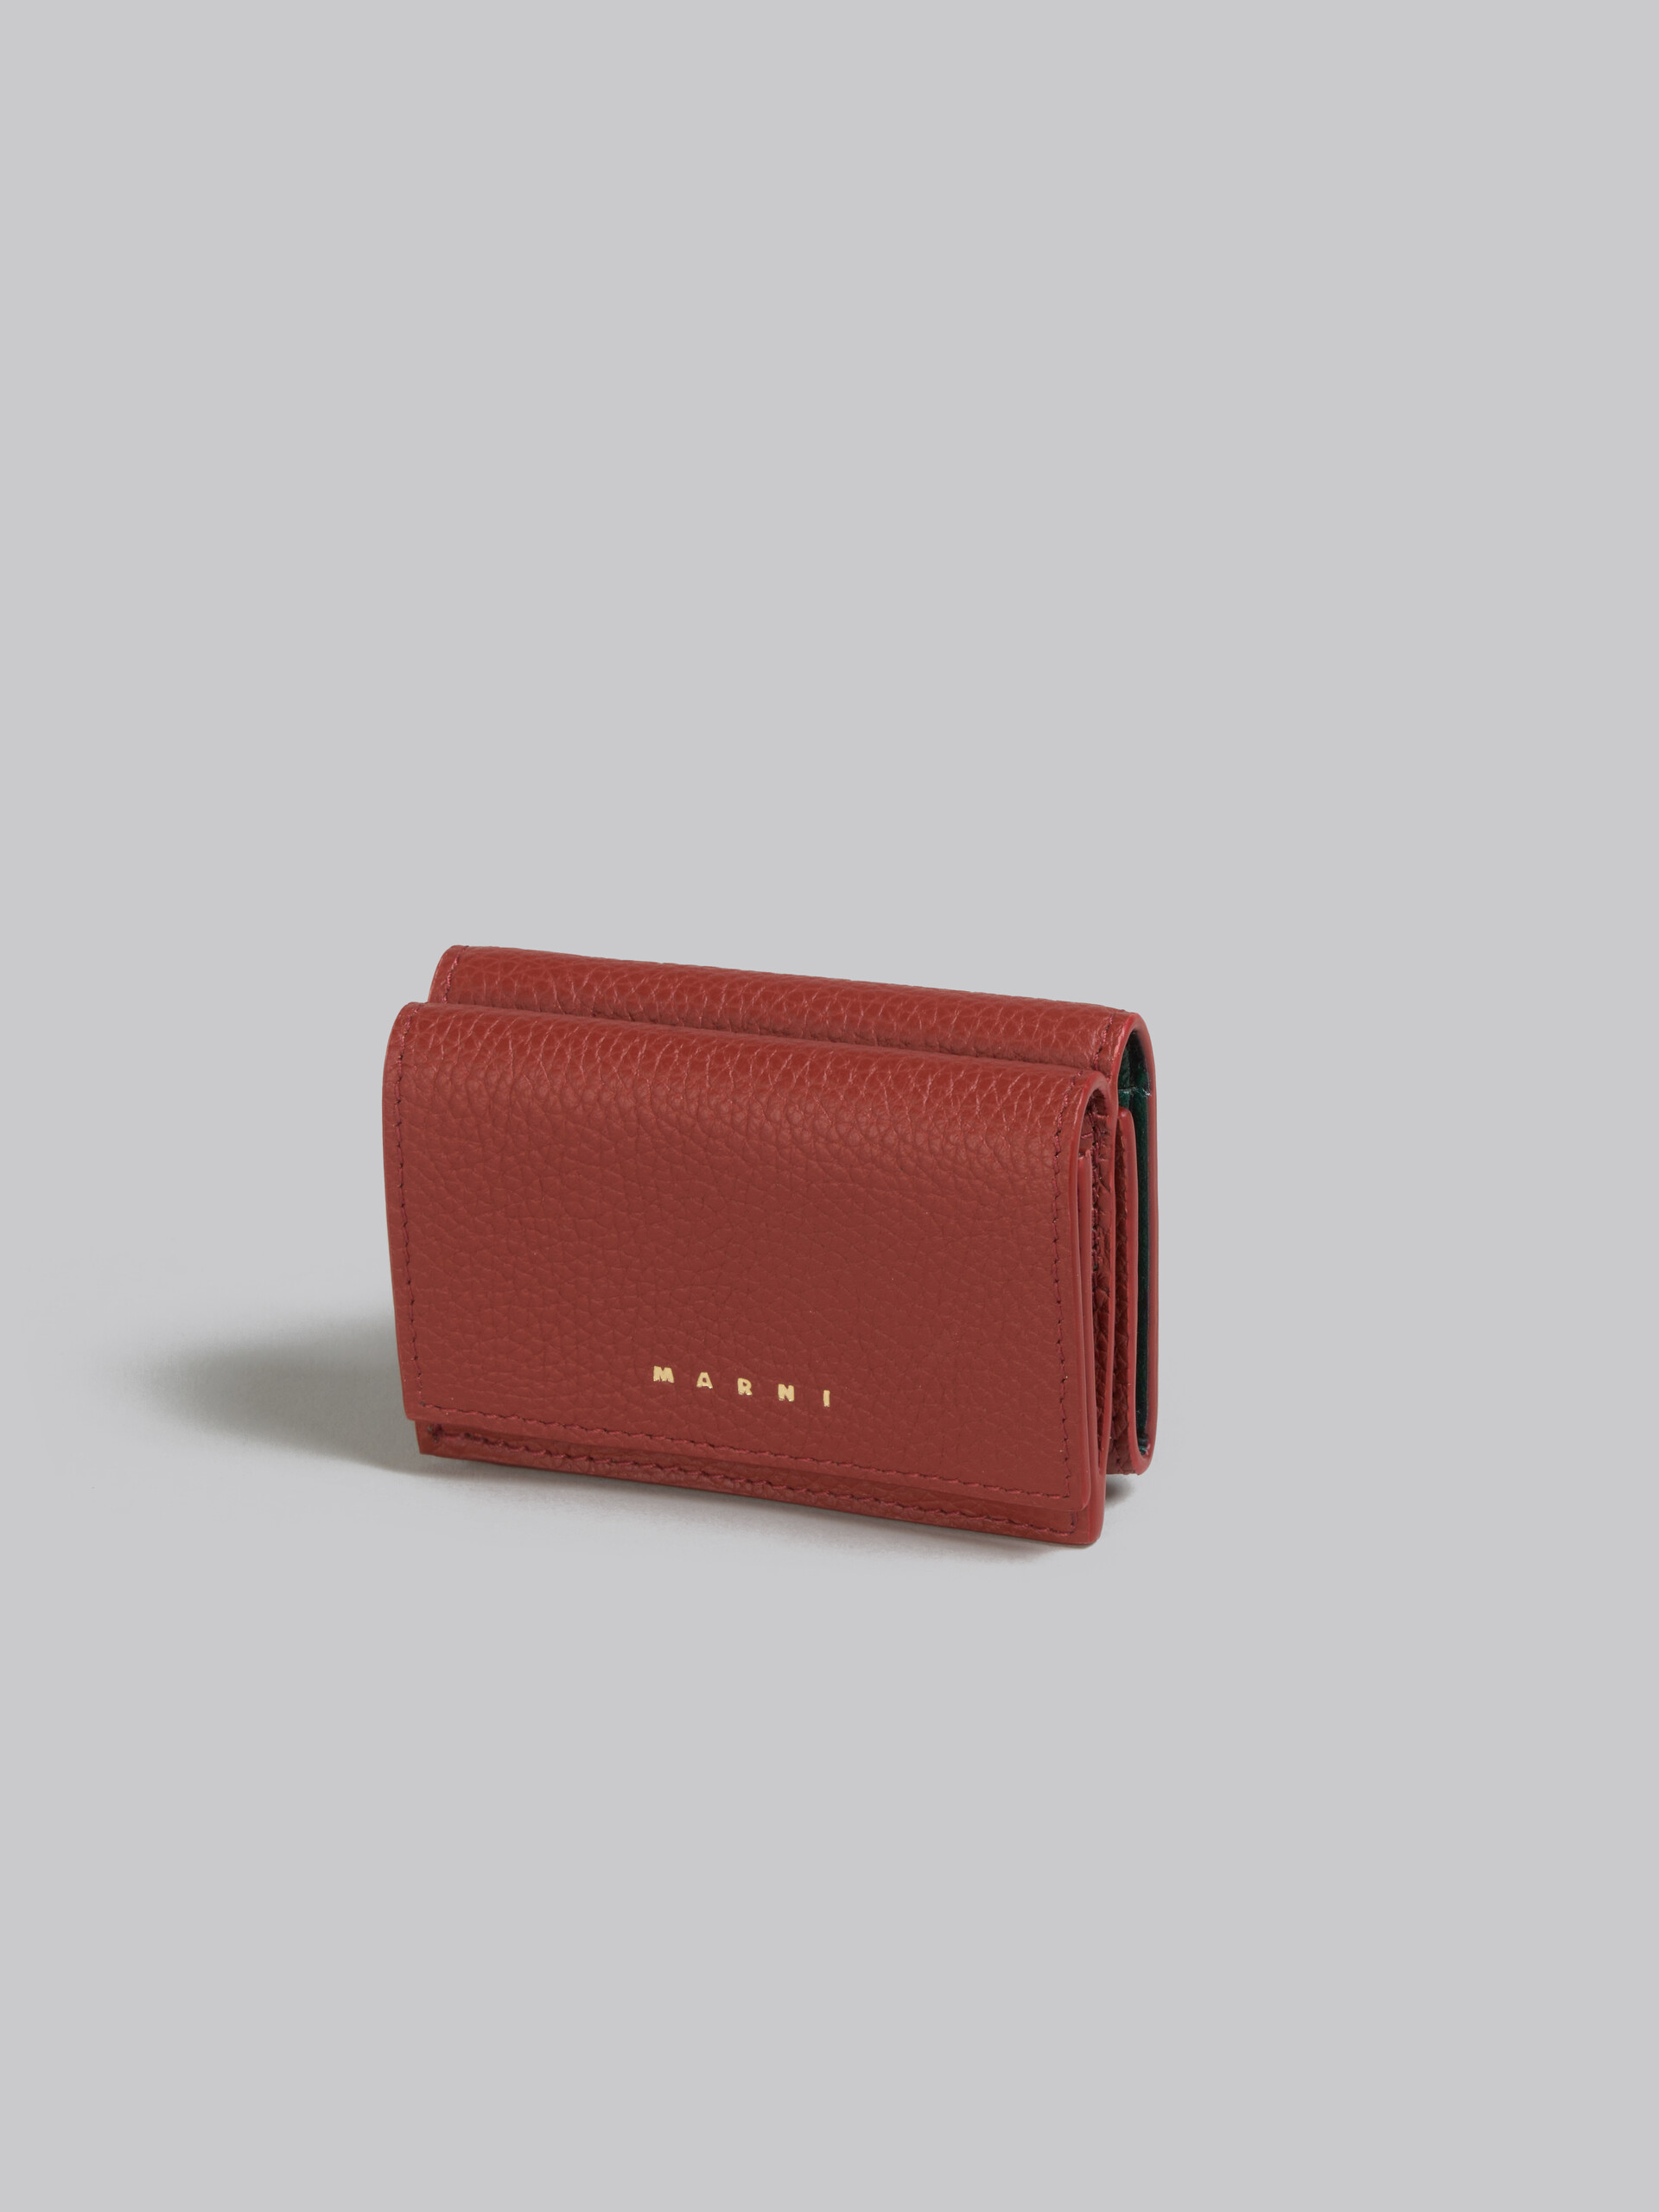 MARNIで人気のミニ財布は、レザー製三つ折りVENICEウォレット